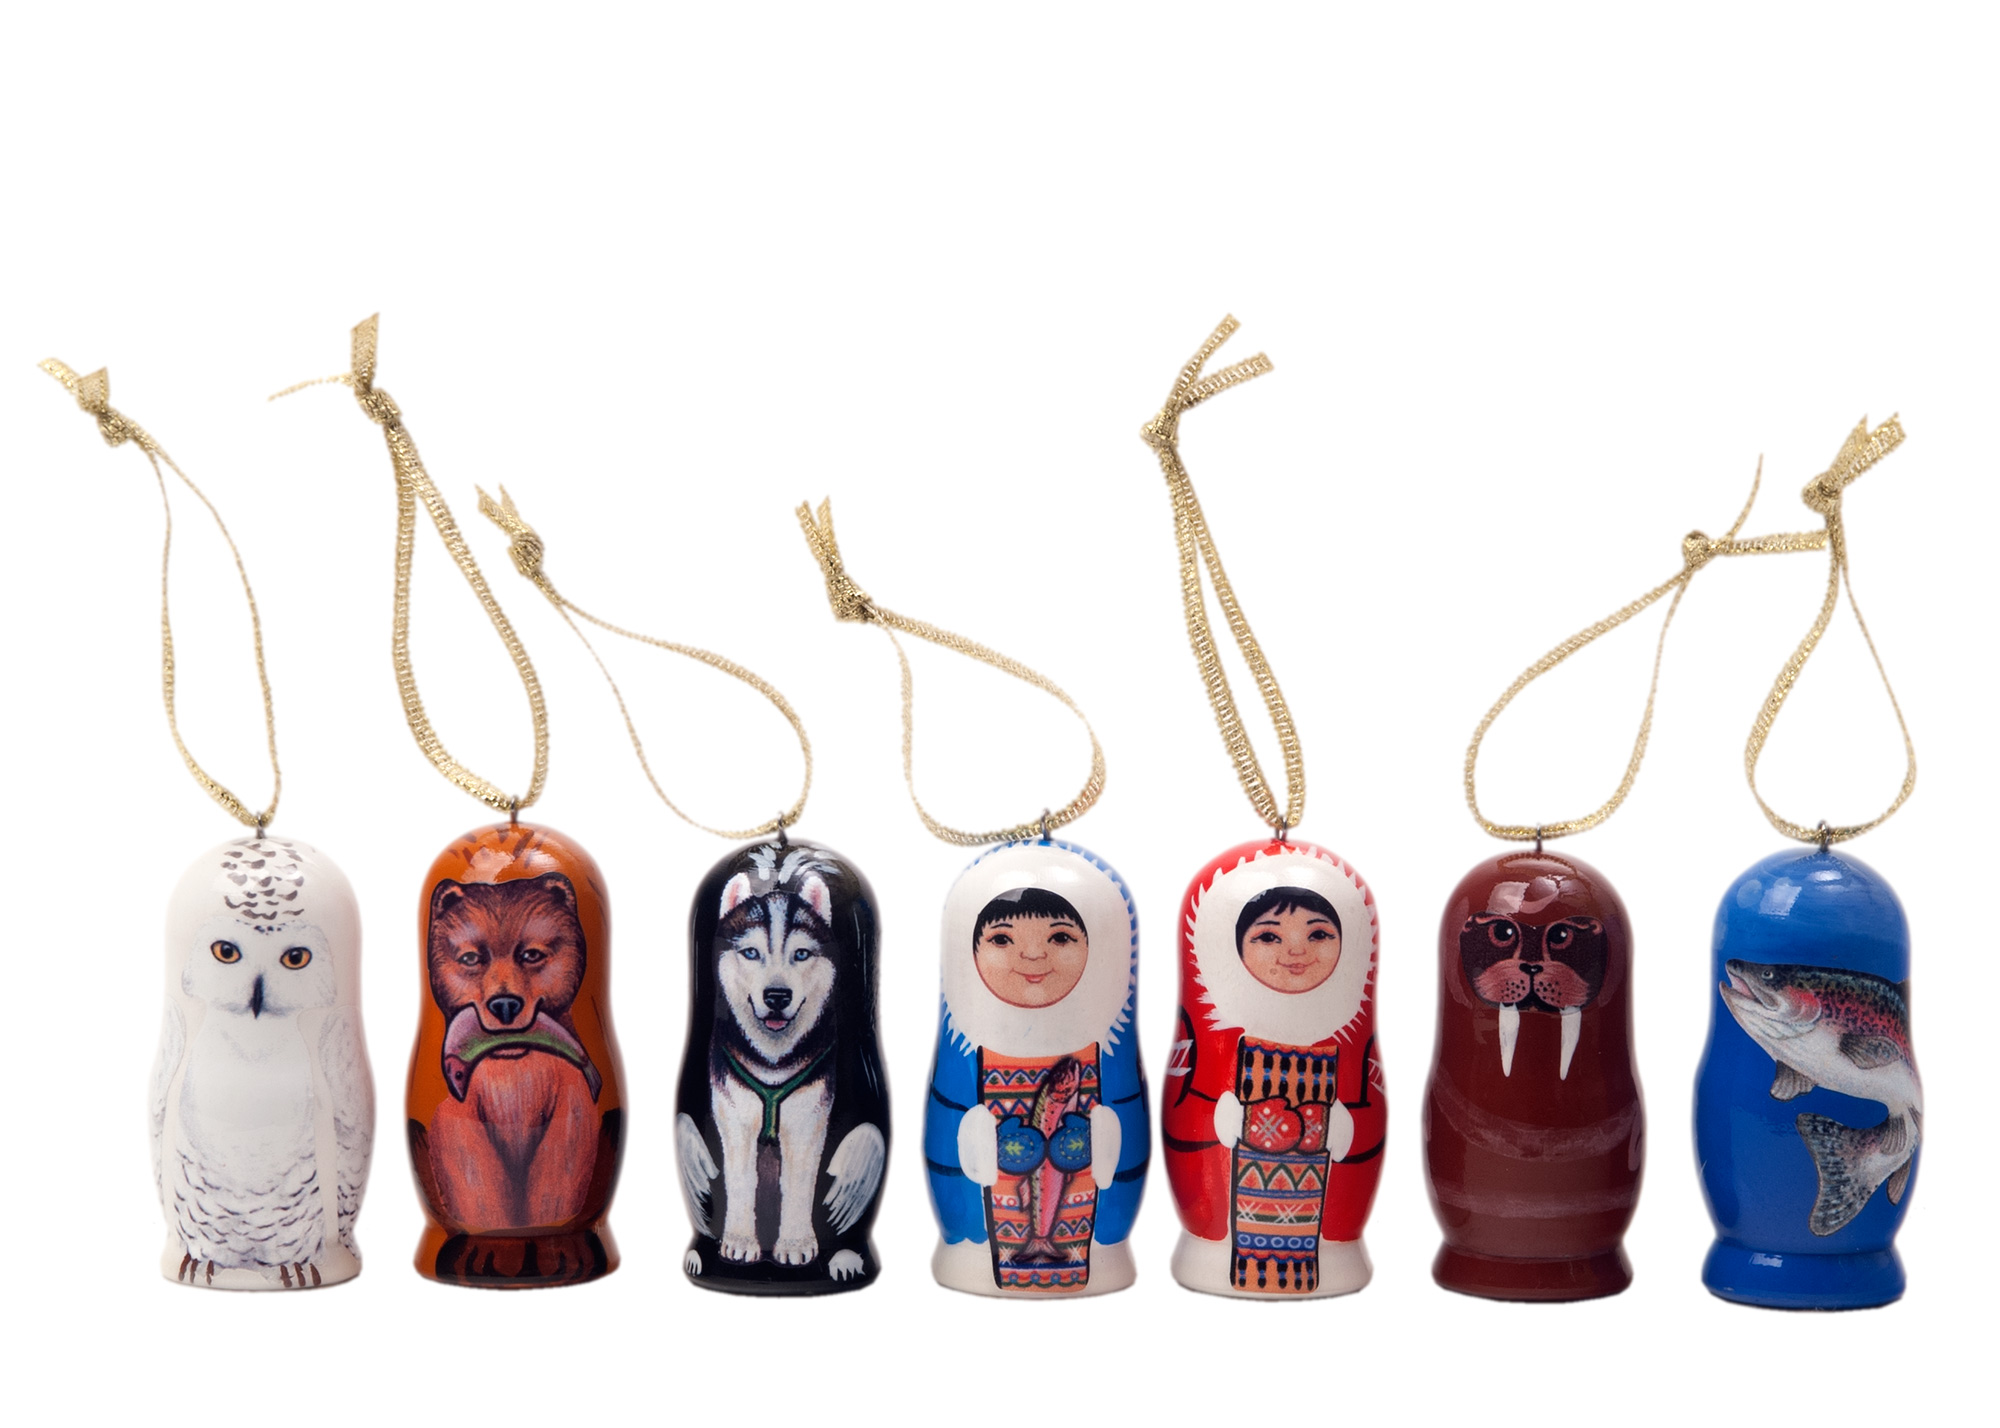 Buy Alaskan Ornaments Set of 7 at GoldenCockerel.com